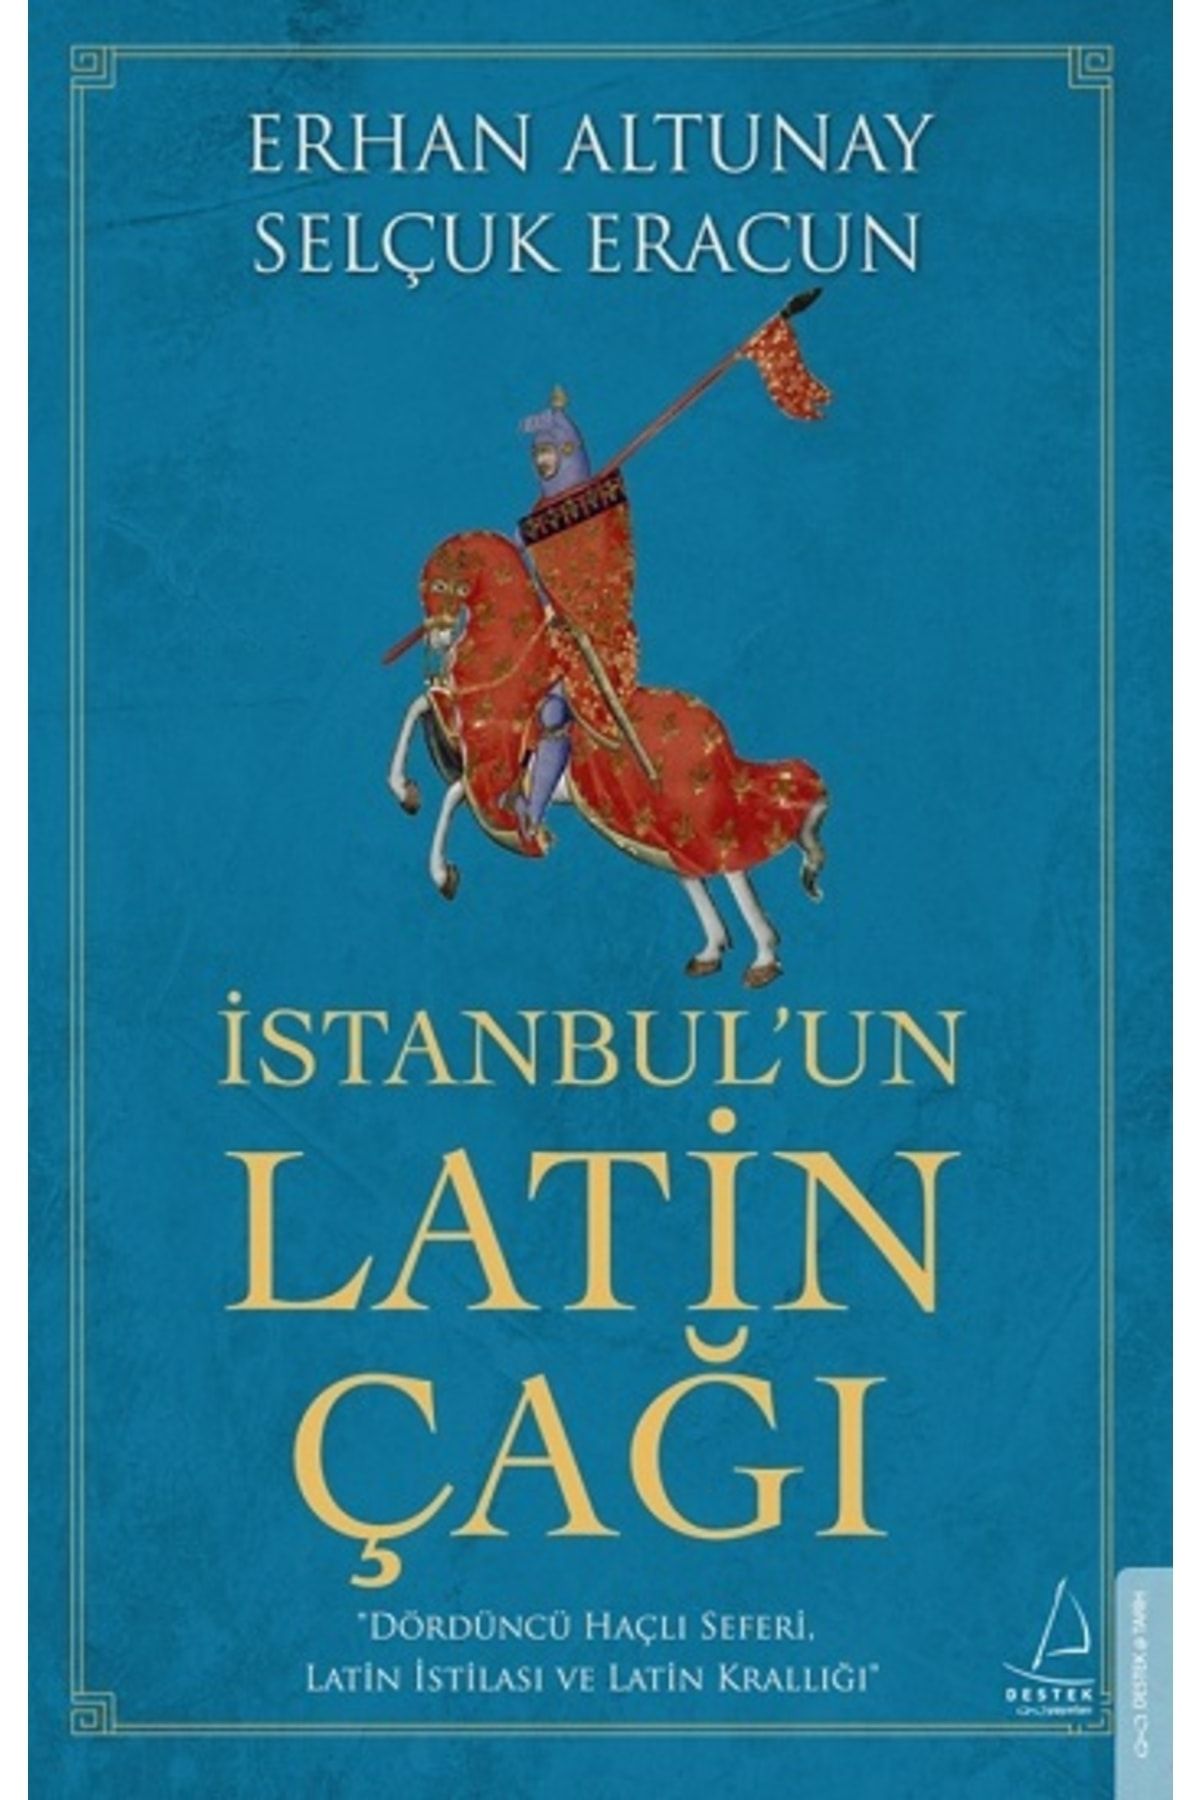 Destek Yayınları Istanbul’un Latin Çağı - Erhan Altunay & Selçuk Eracun